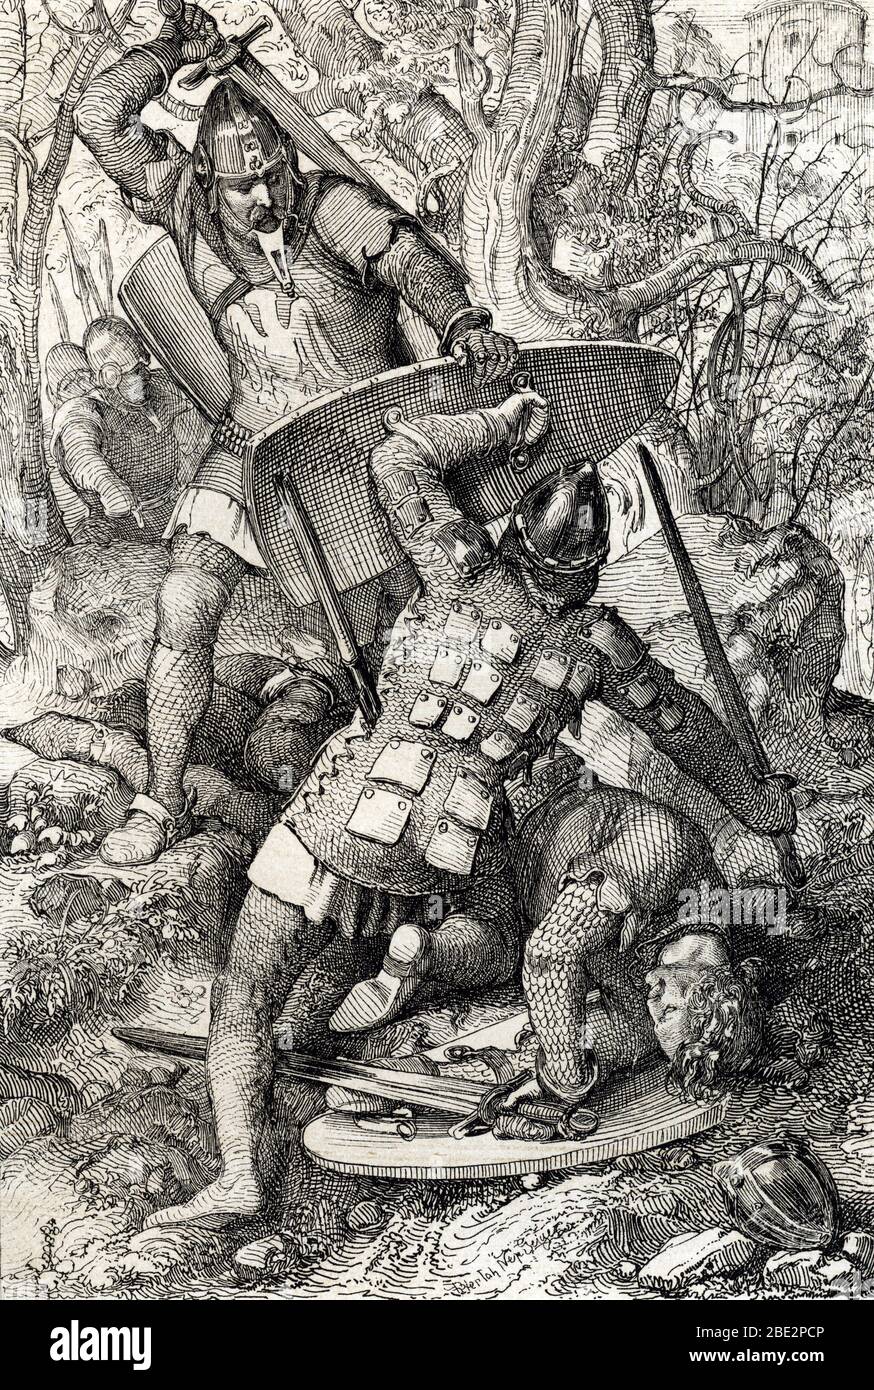 'La mort d'Ernest II de Souabe (1010-1030) lors d'une bataille contre l'eveque de Constance, Allemagne' (The death of Ernest II, Duke of Swabia in Con Stock Photo